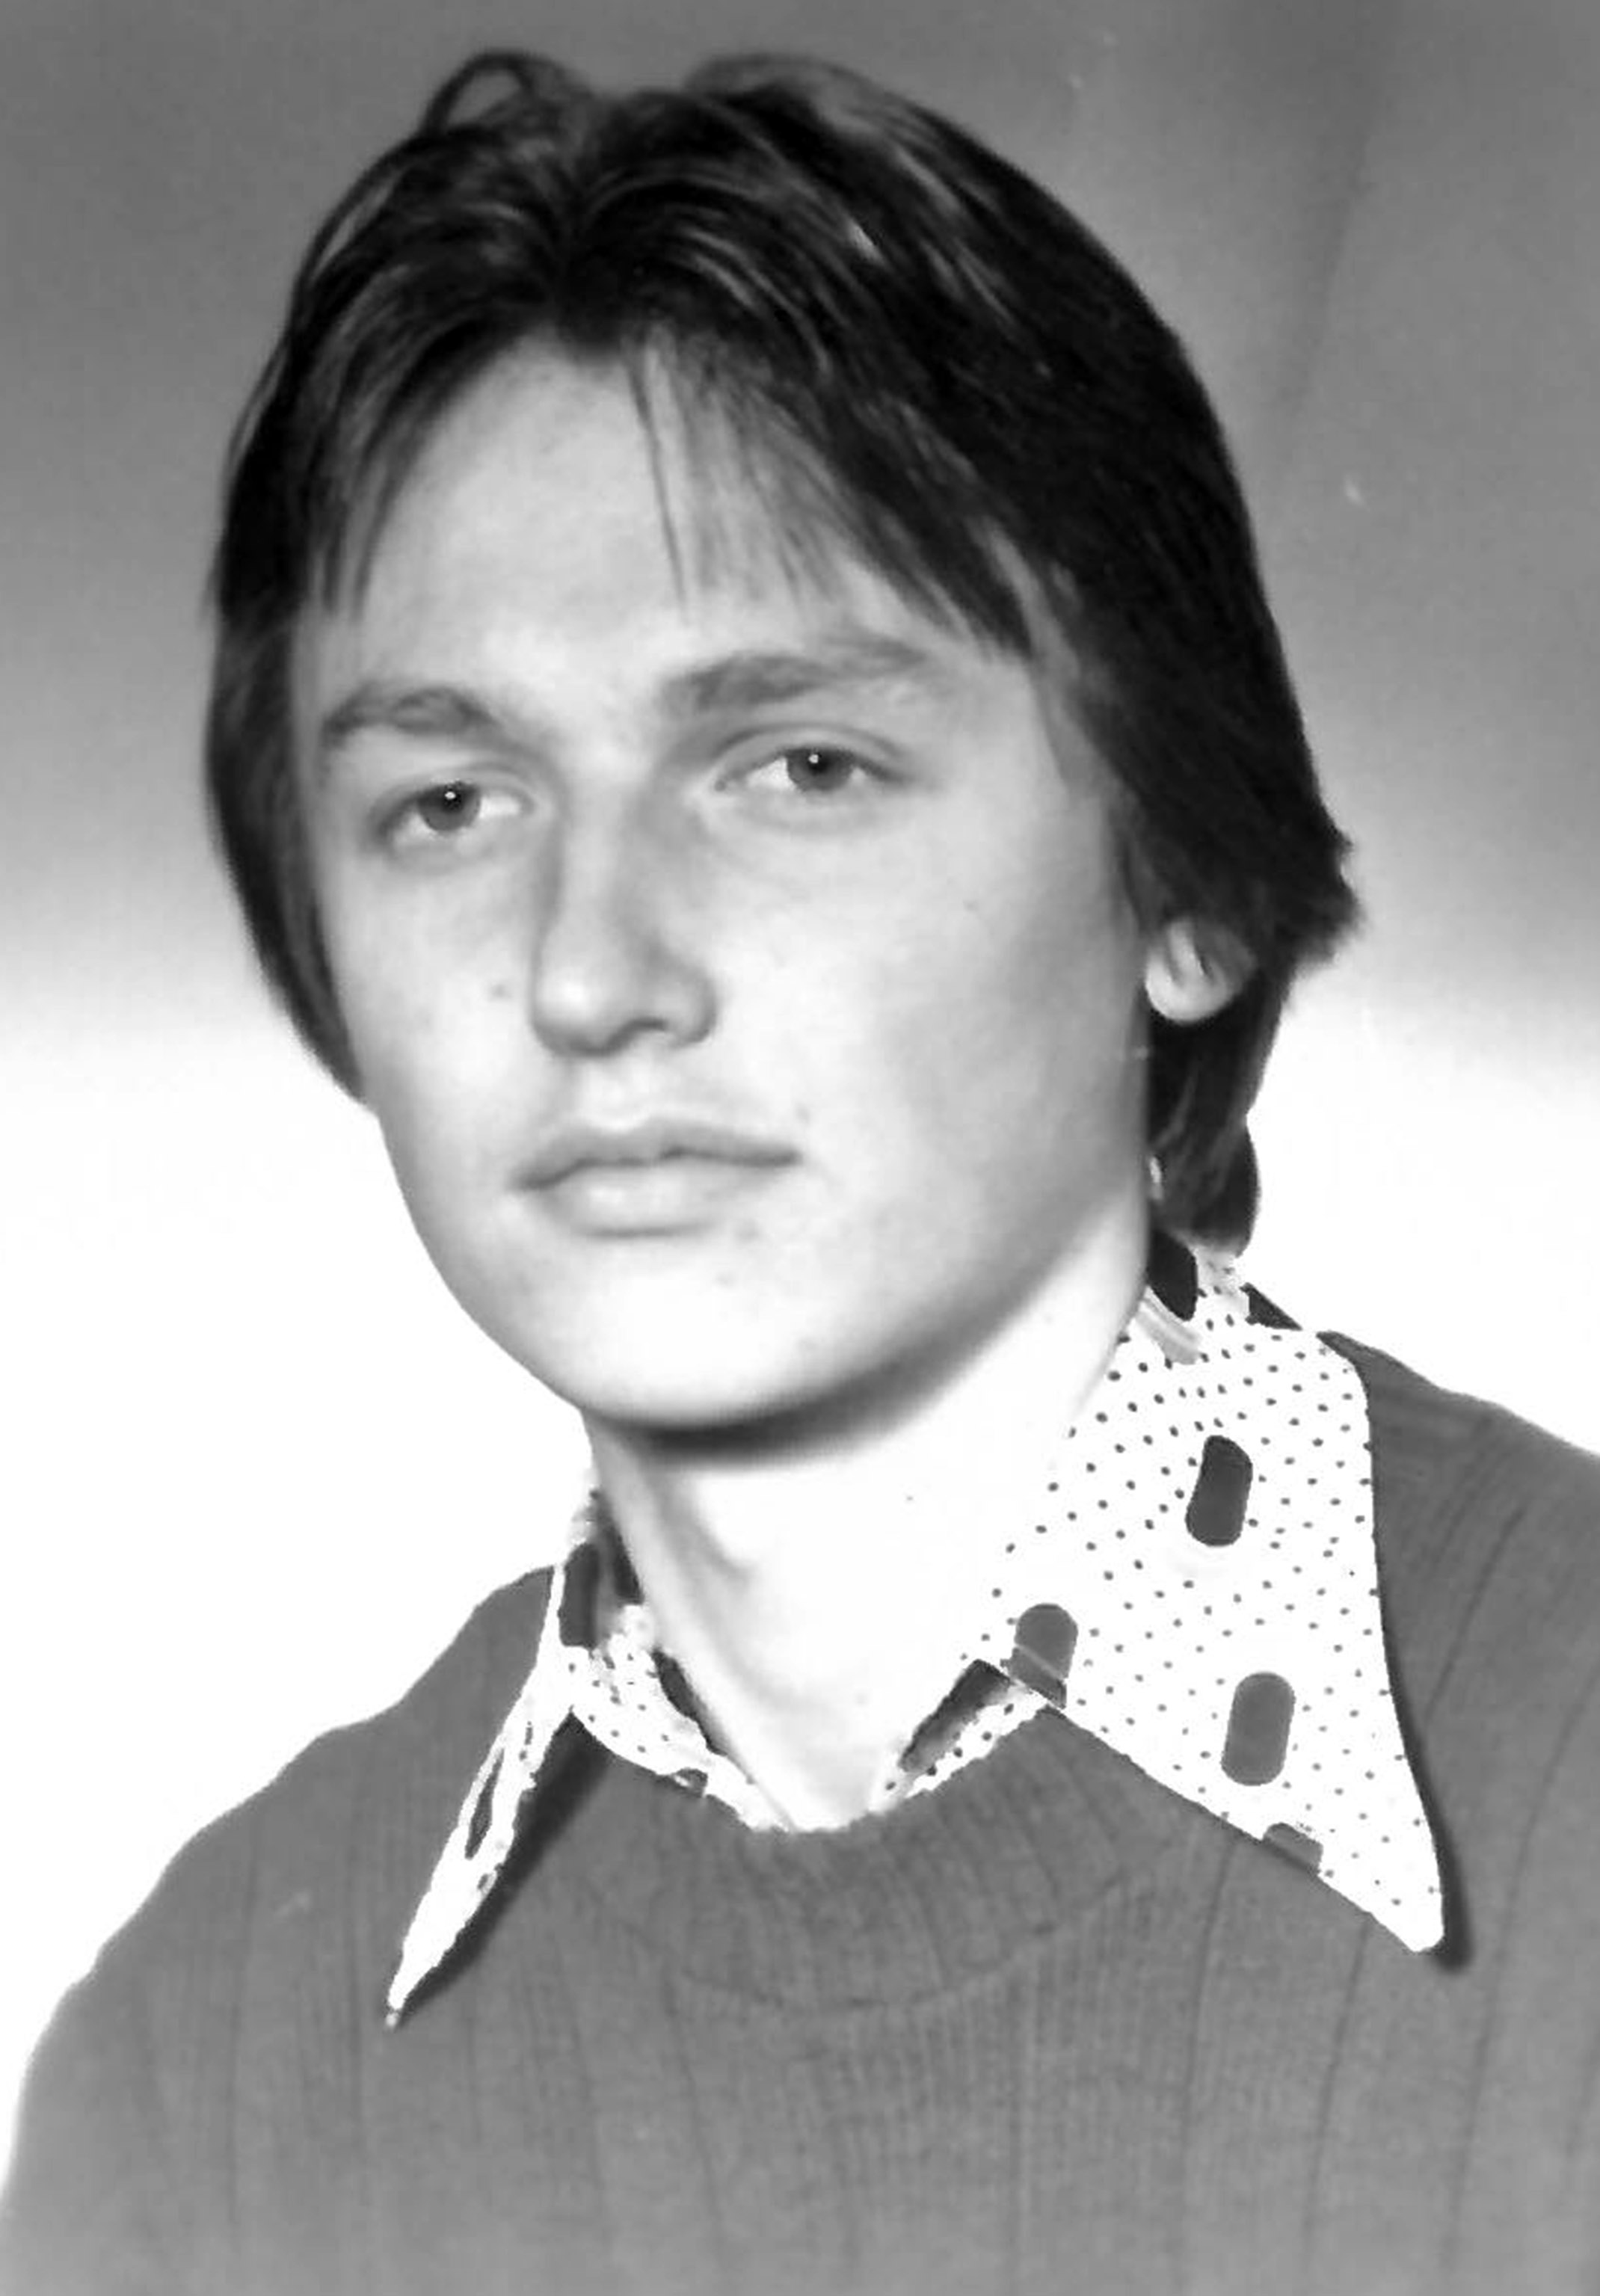 Malinowski Mirosław